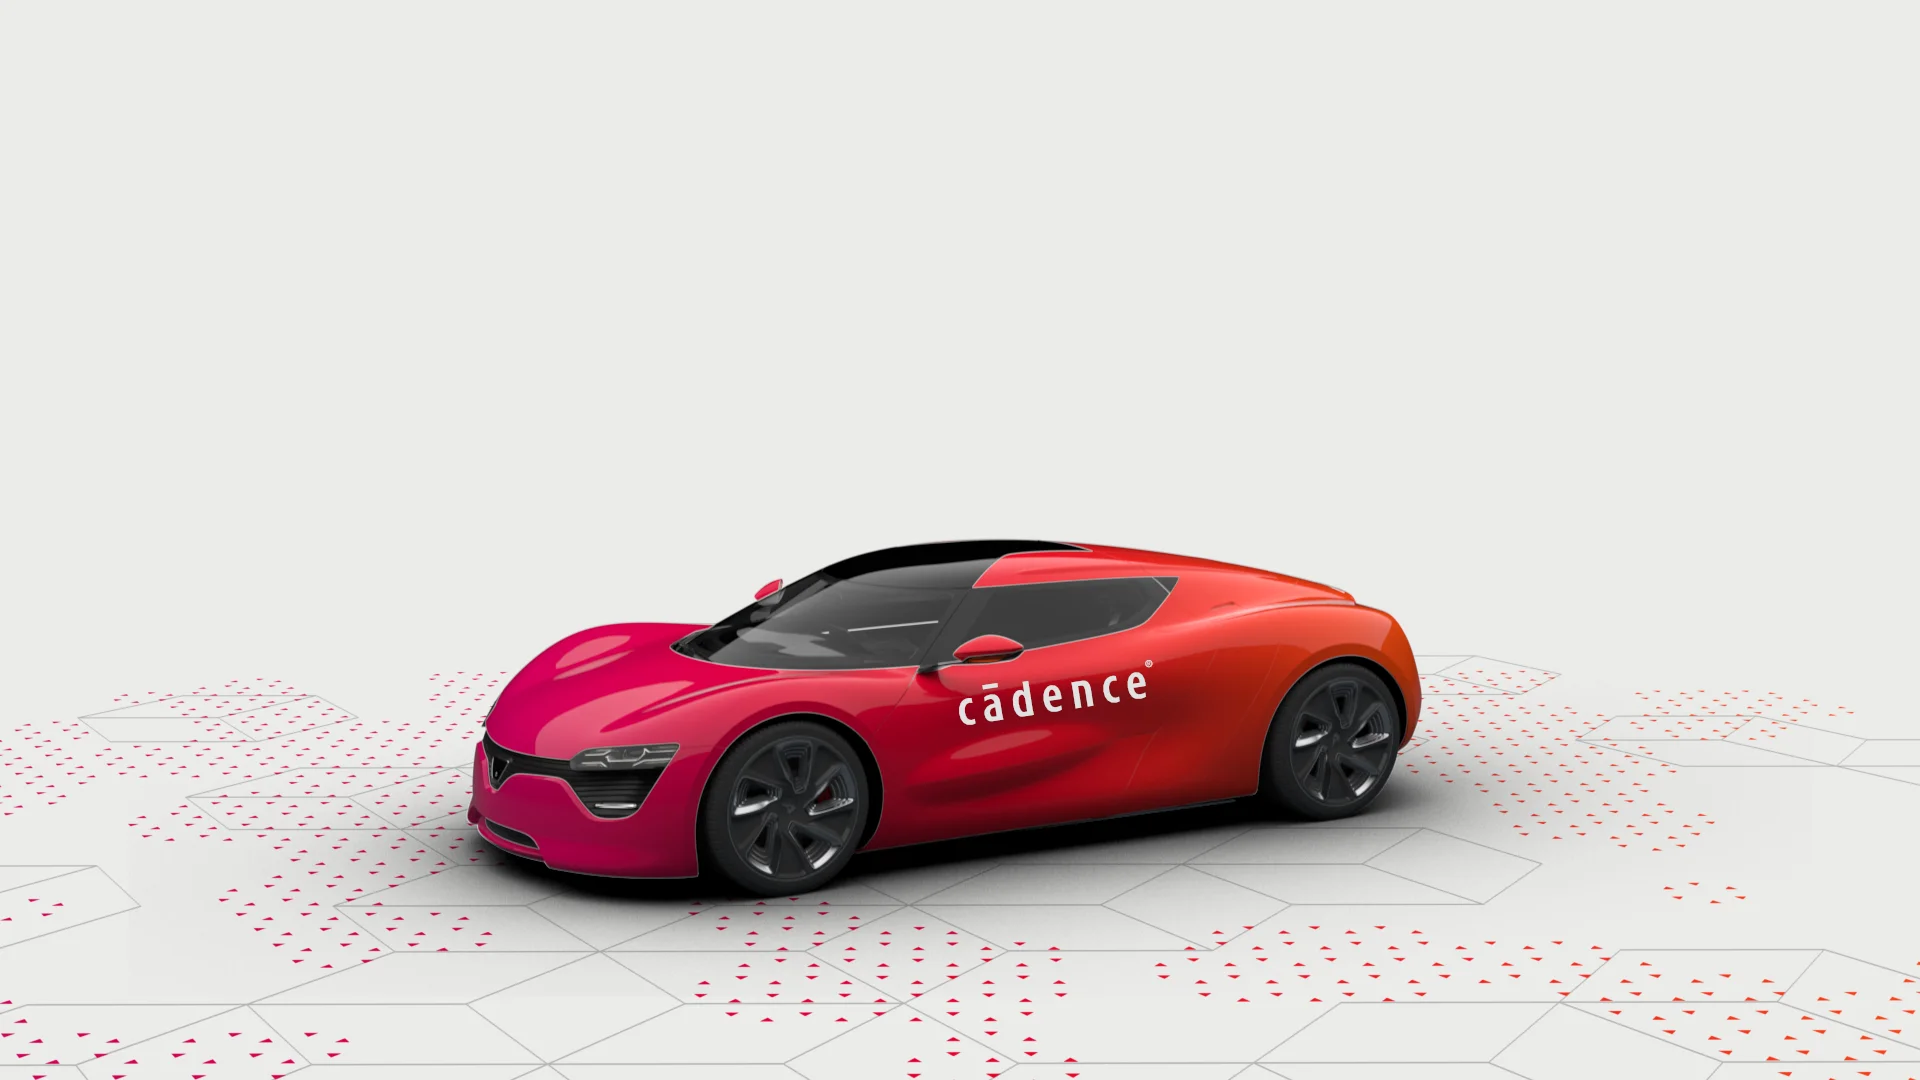 Cadence-Car-Design-01-01